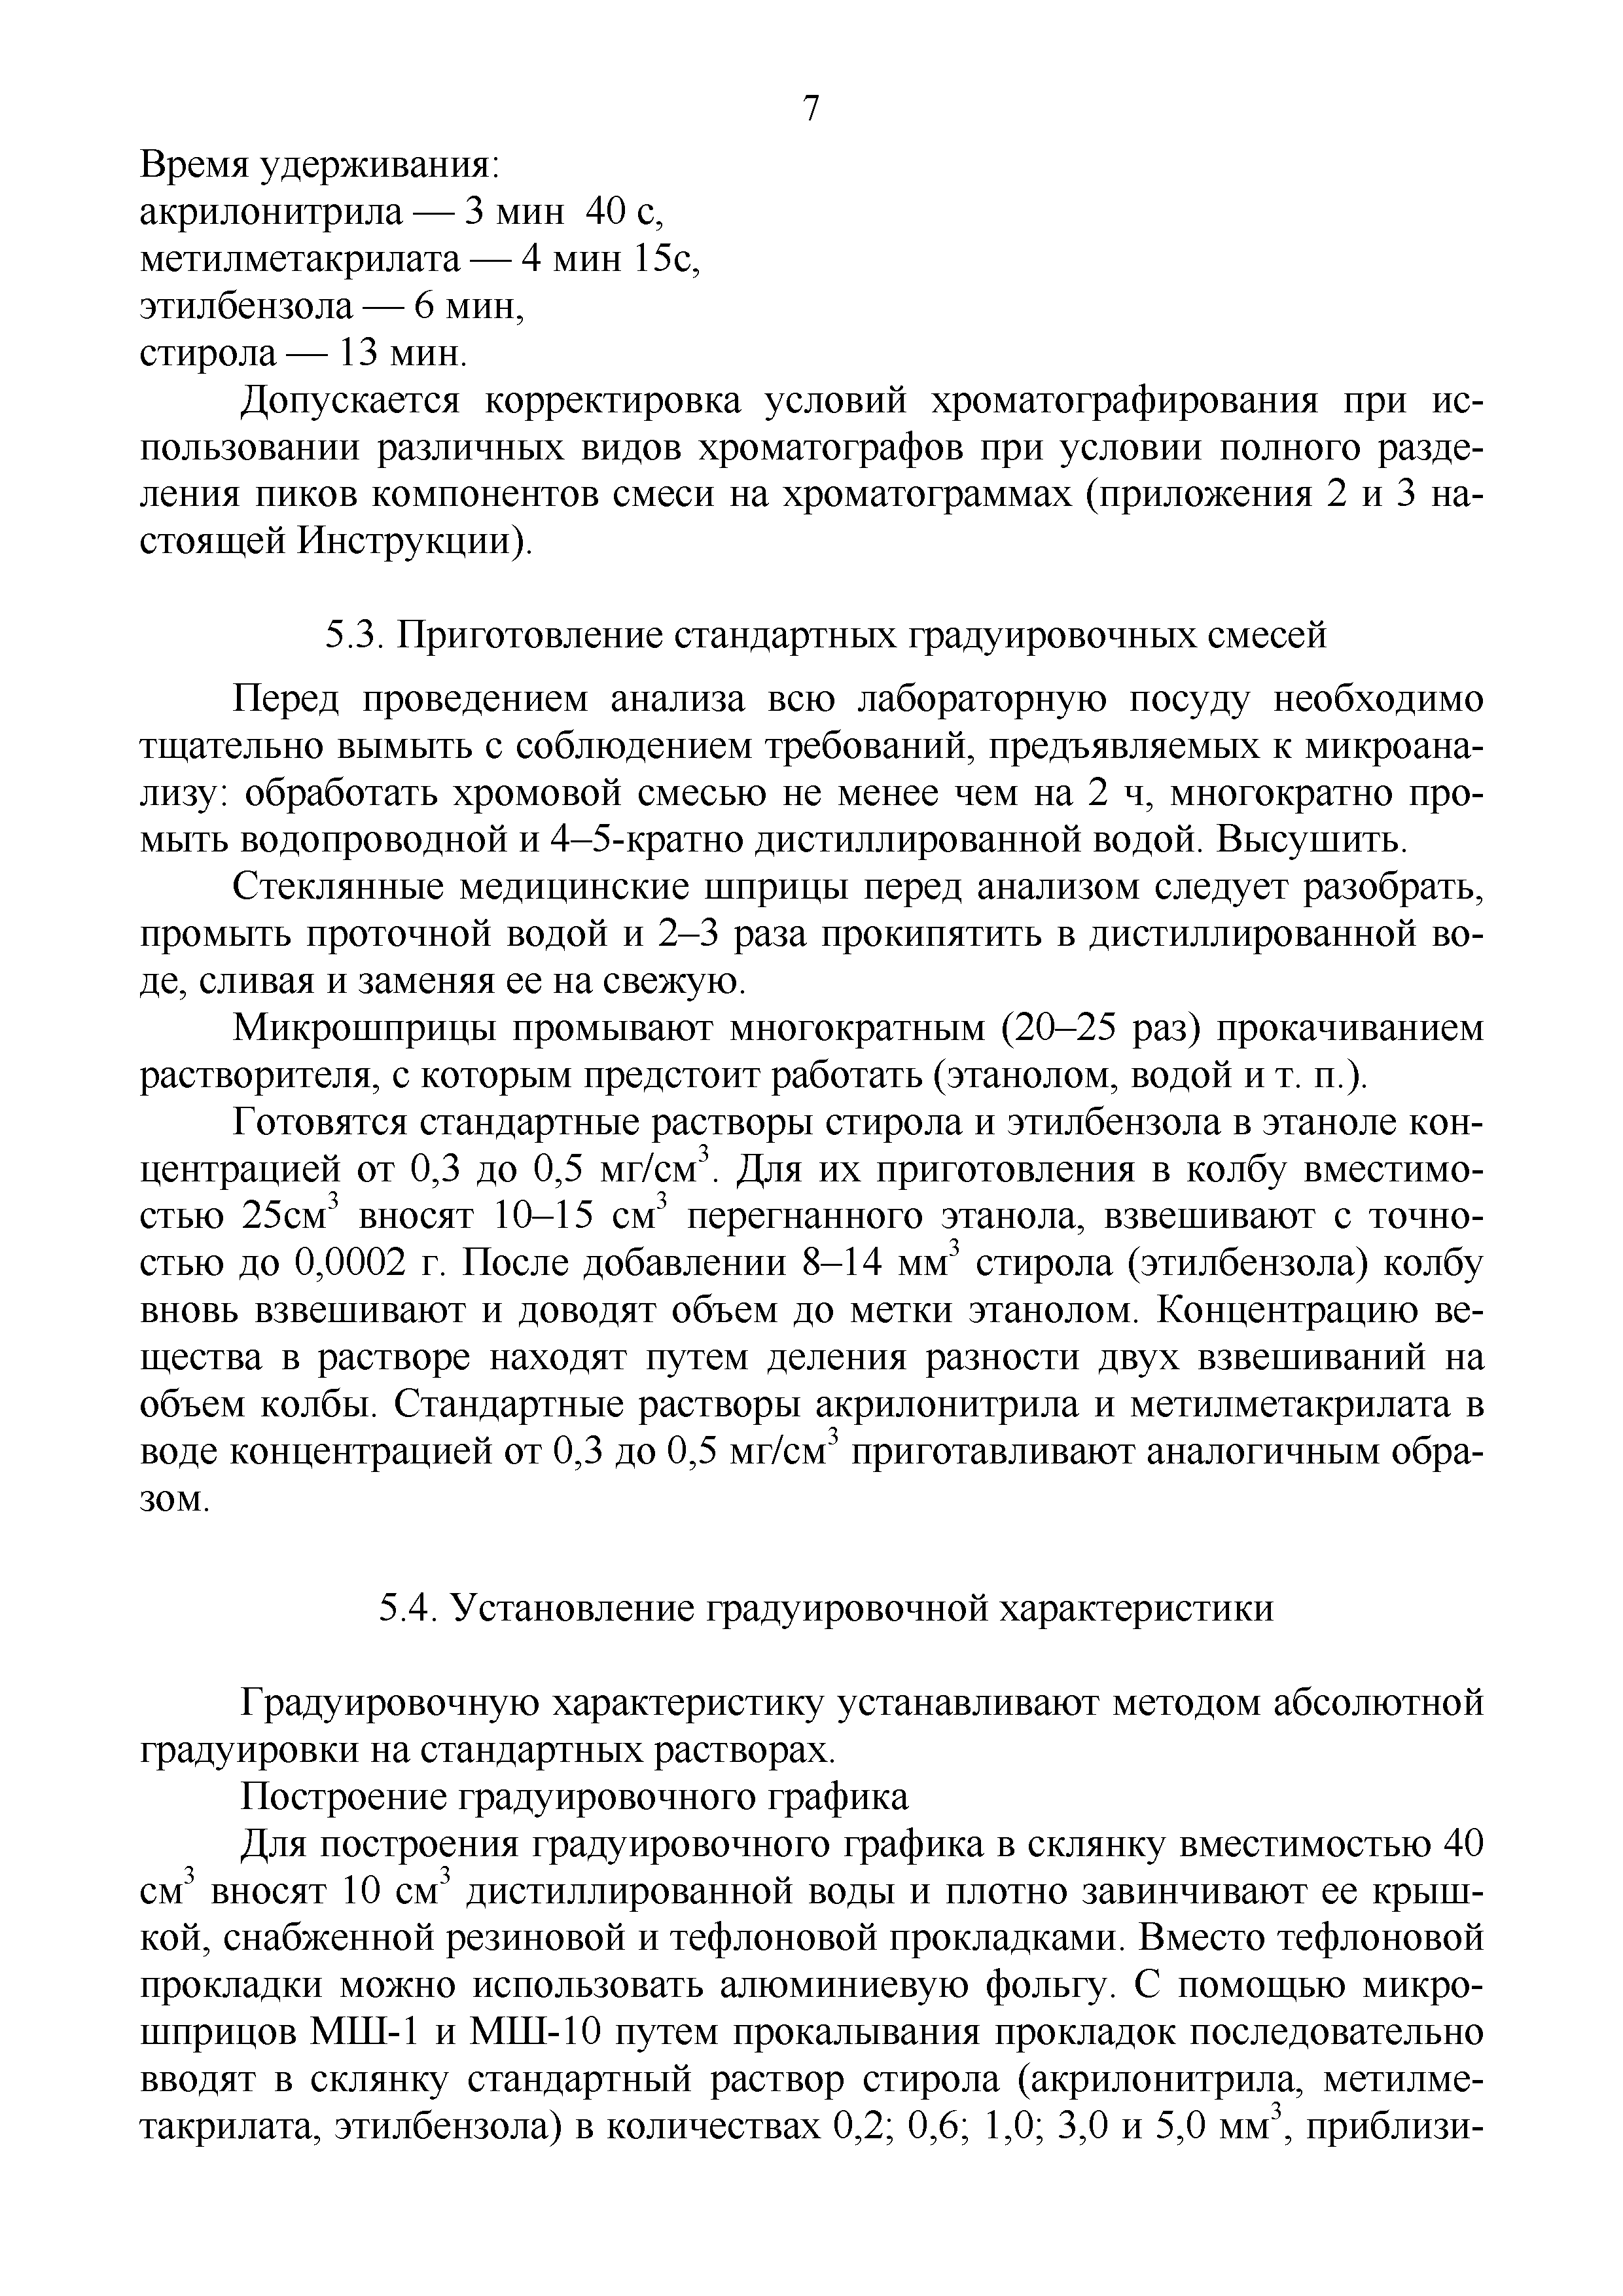 Инструкция 4.1.10-14-91-2005